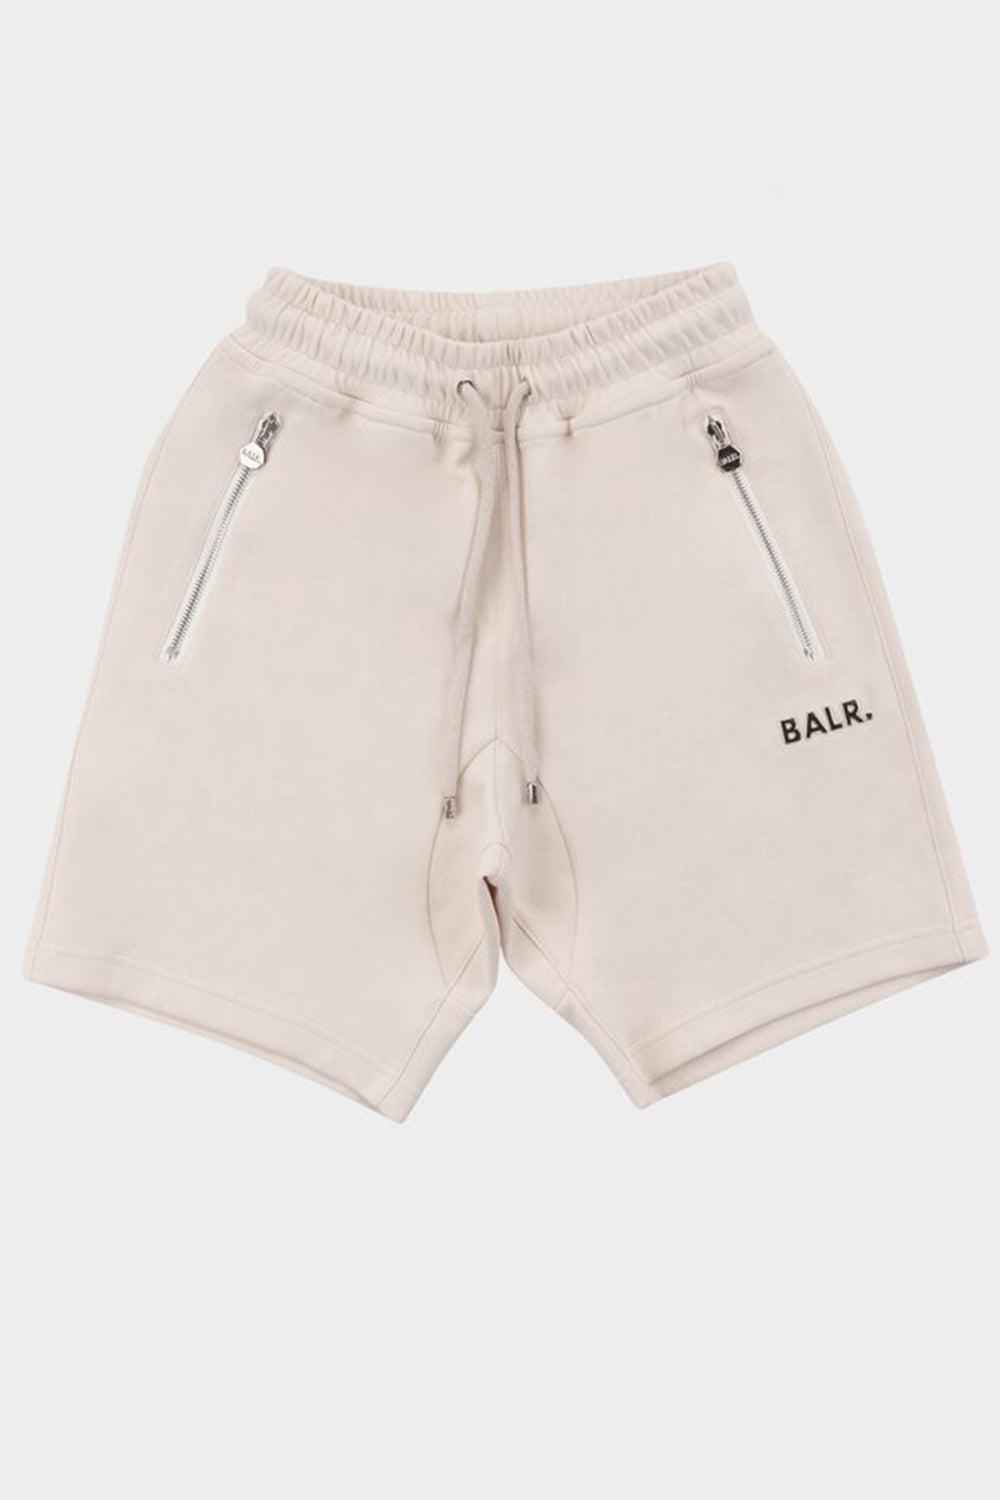 מכנסיים קצרים לגברים לוגו BALR Vendome online | ונדום .